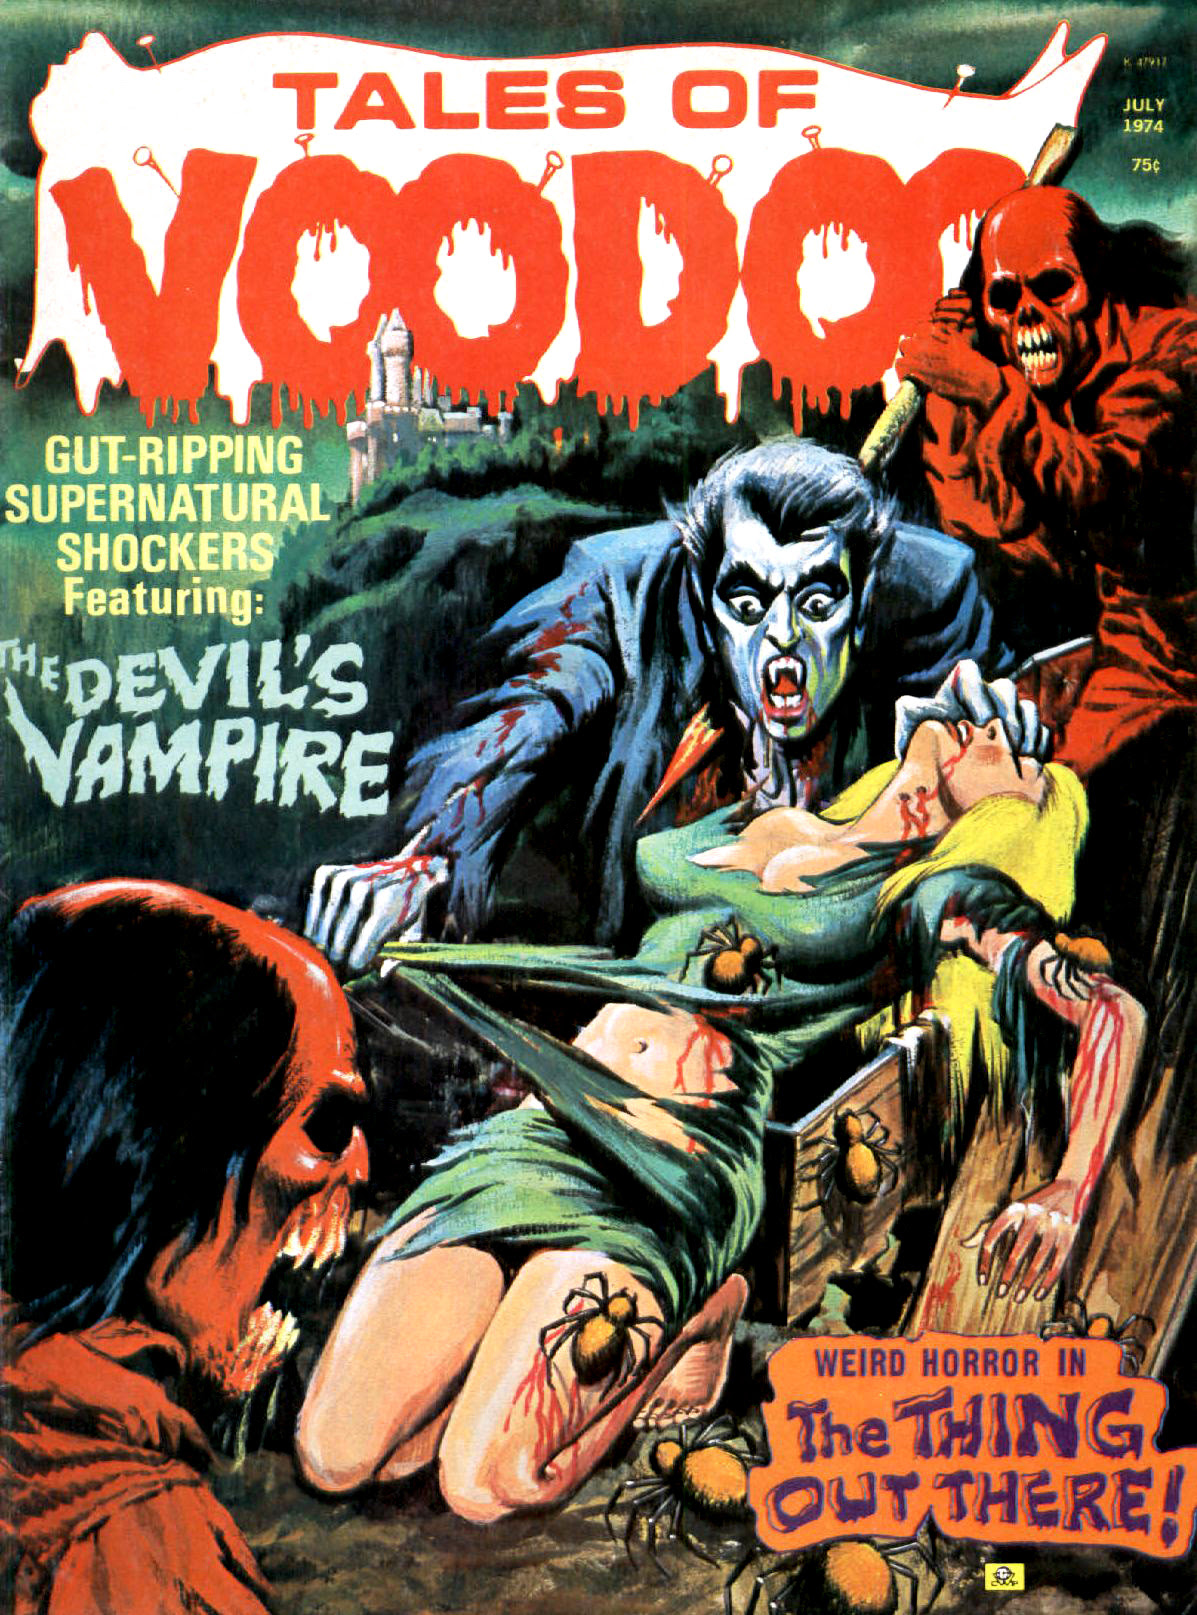 Tales of Voodoo Vol. 7 #4 (Eerie Publications 1974